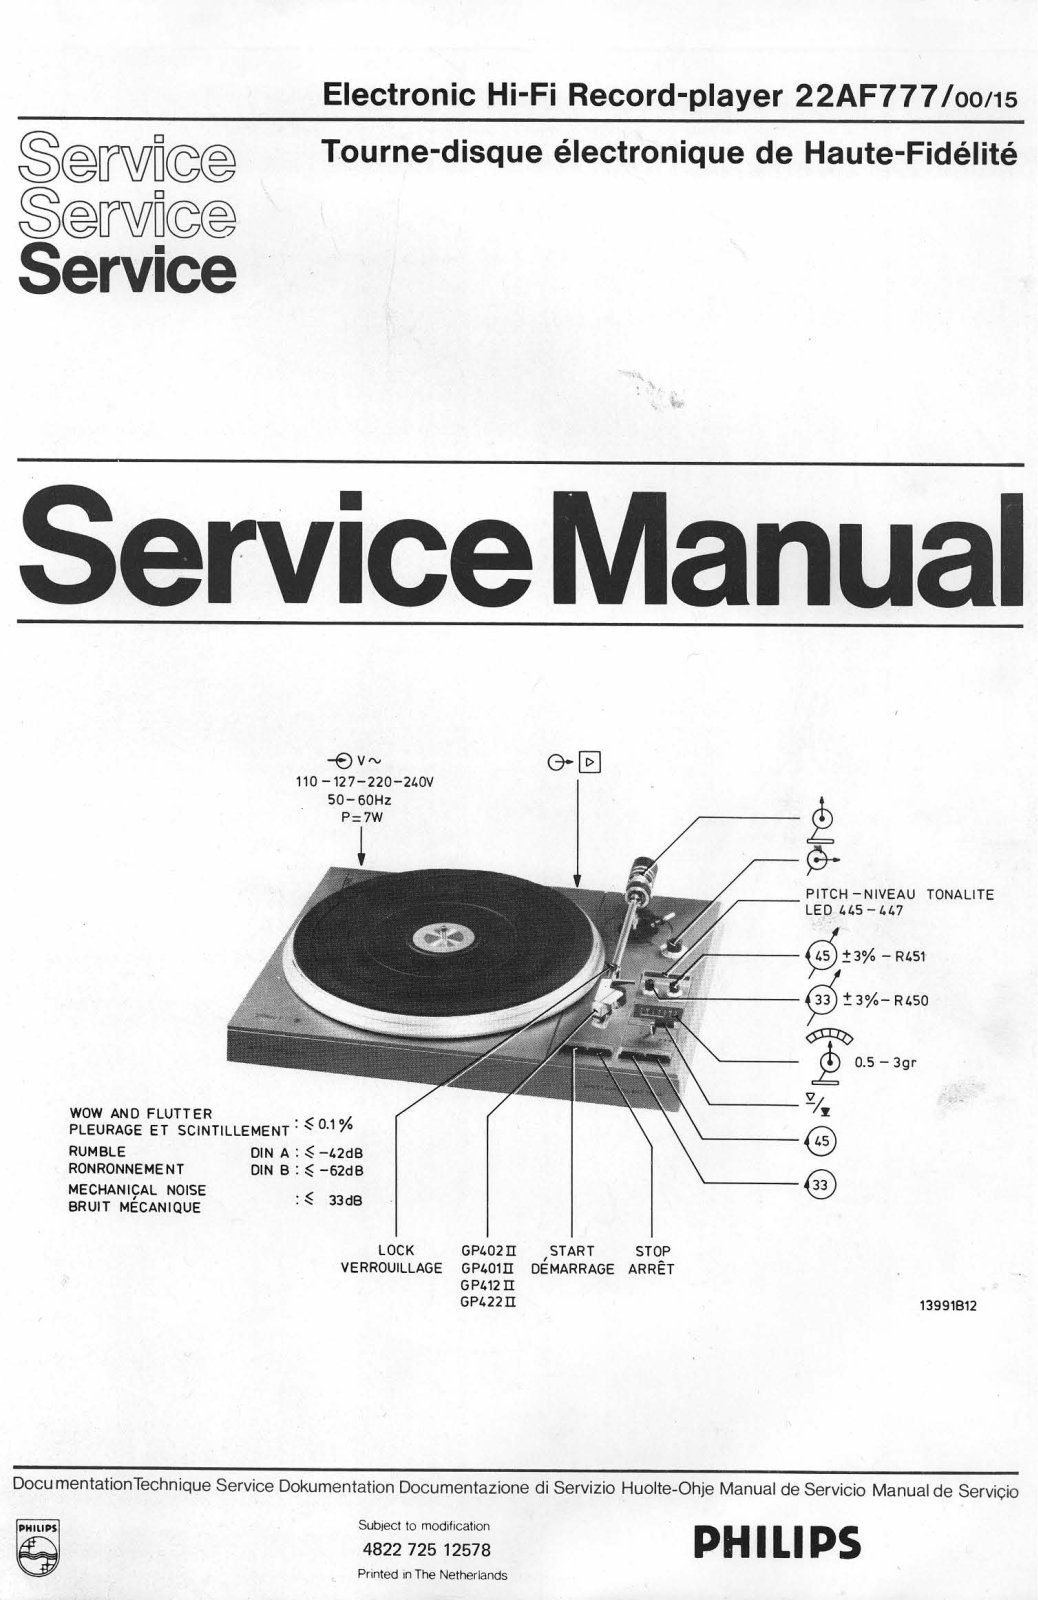 Philips 22-AF-777 Service Manual